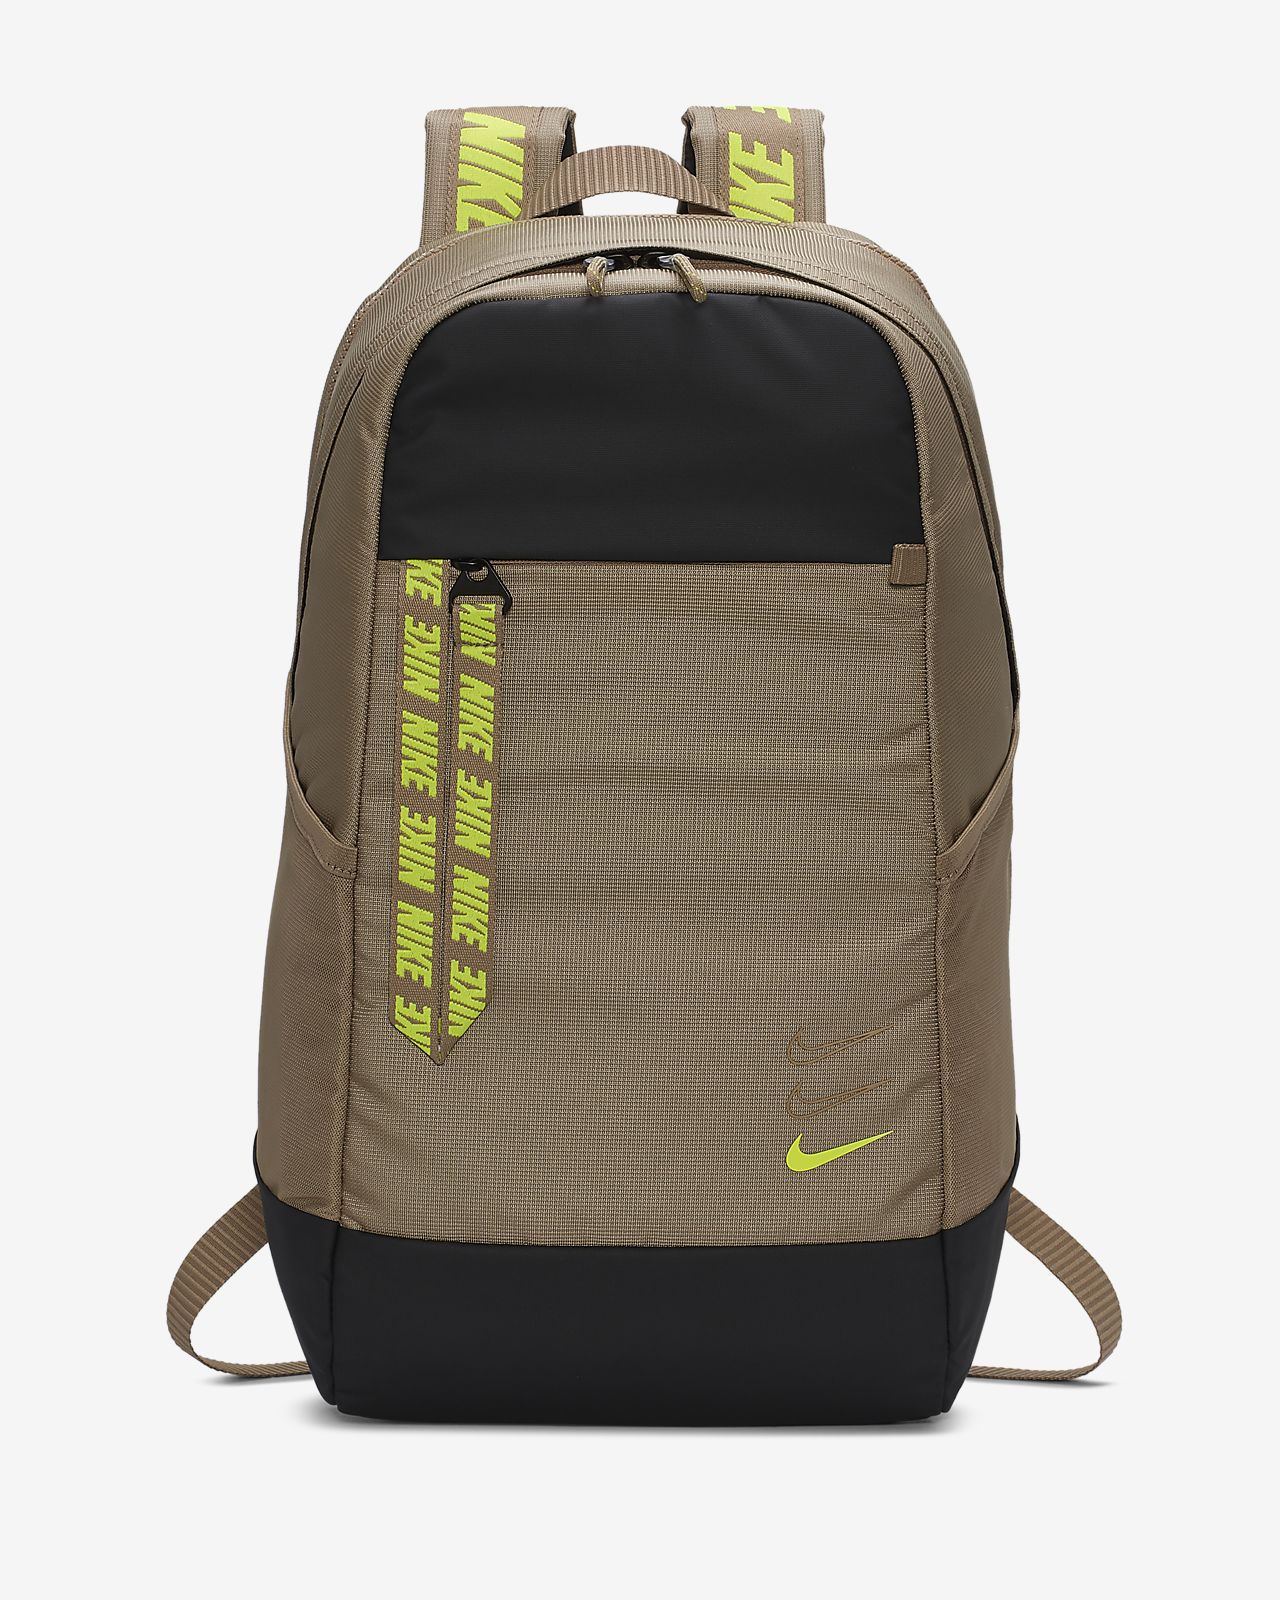 latest nike backpack